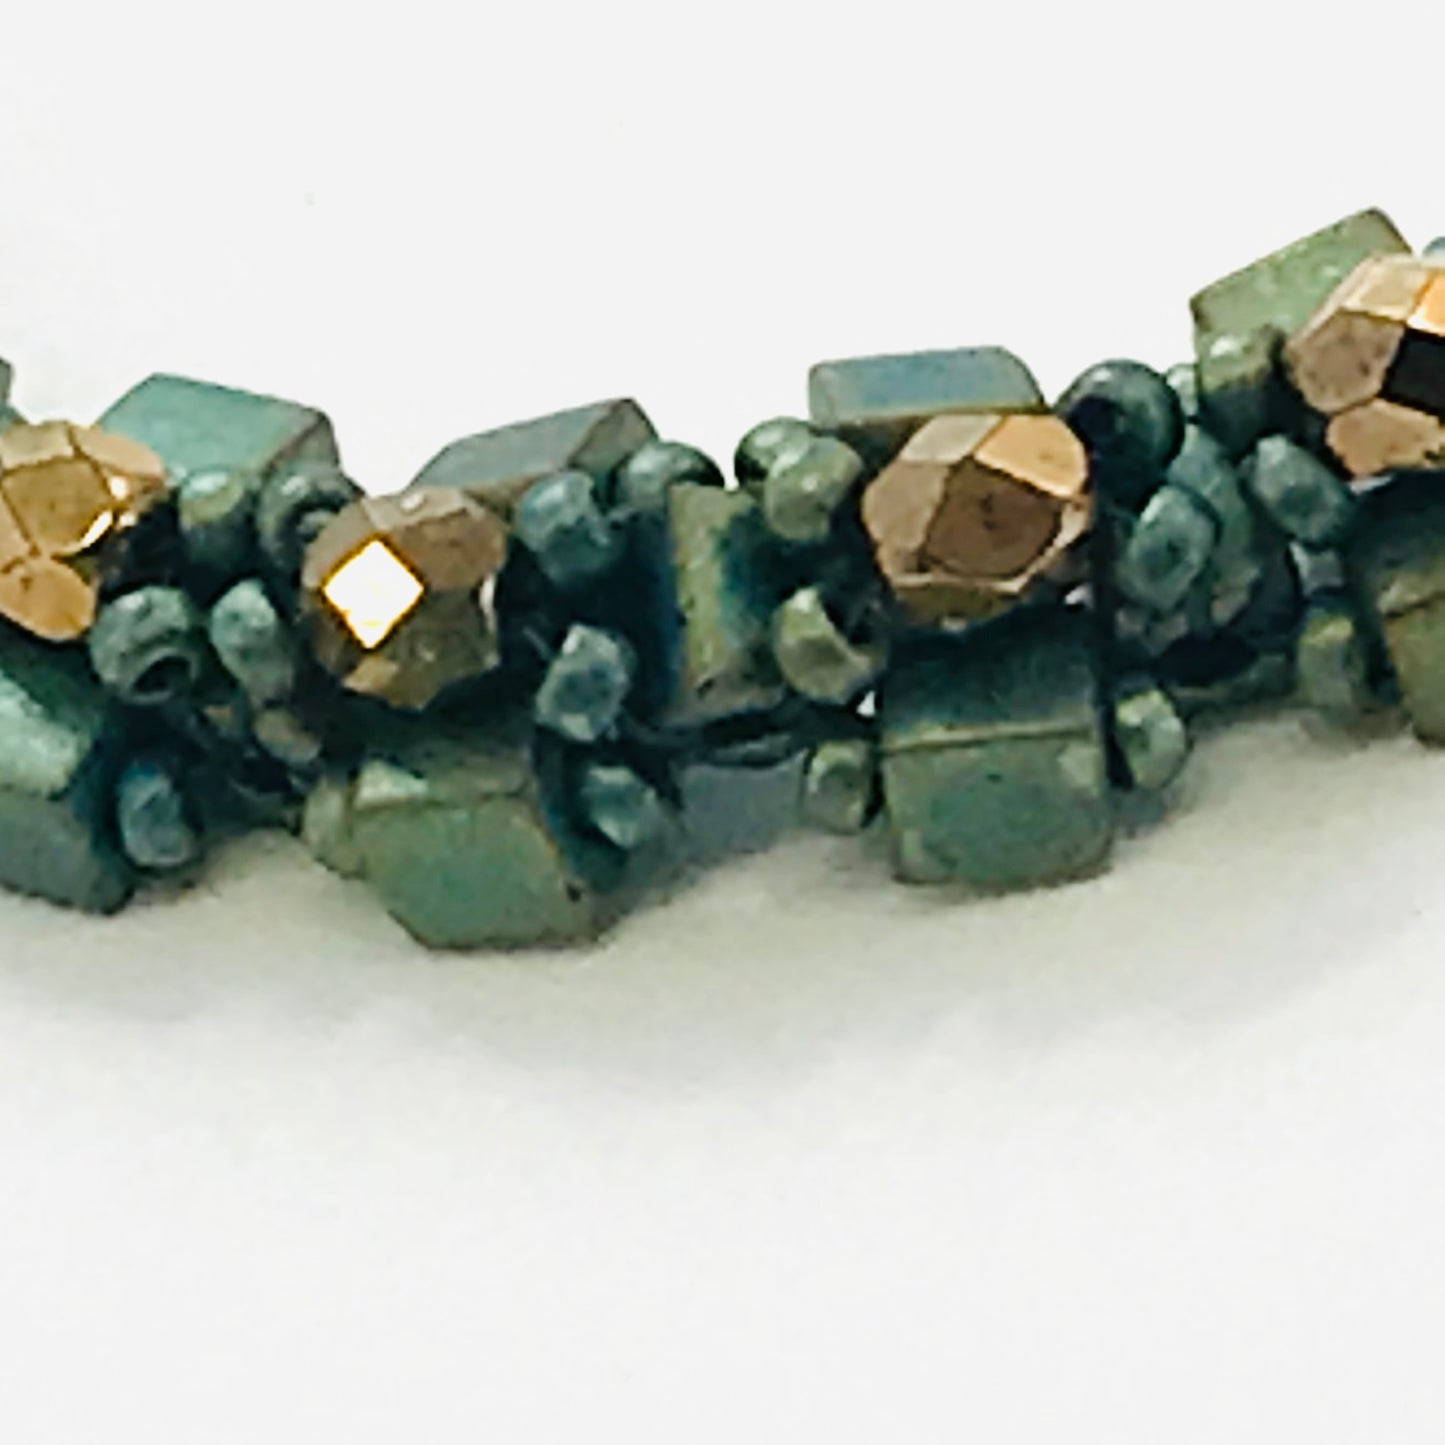 Patina Green with Czech Glass Art Bead  Bracelet